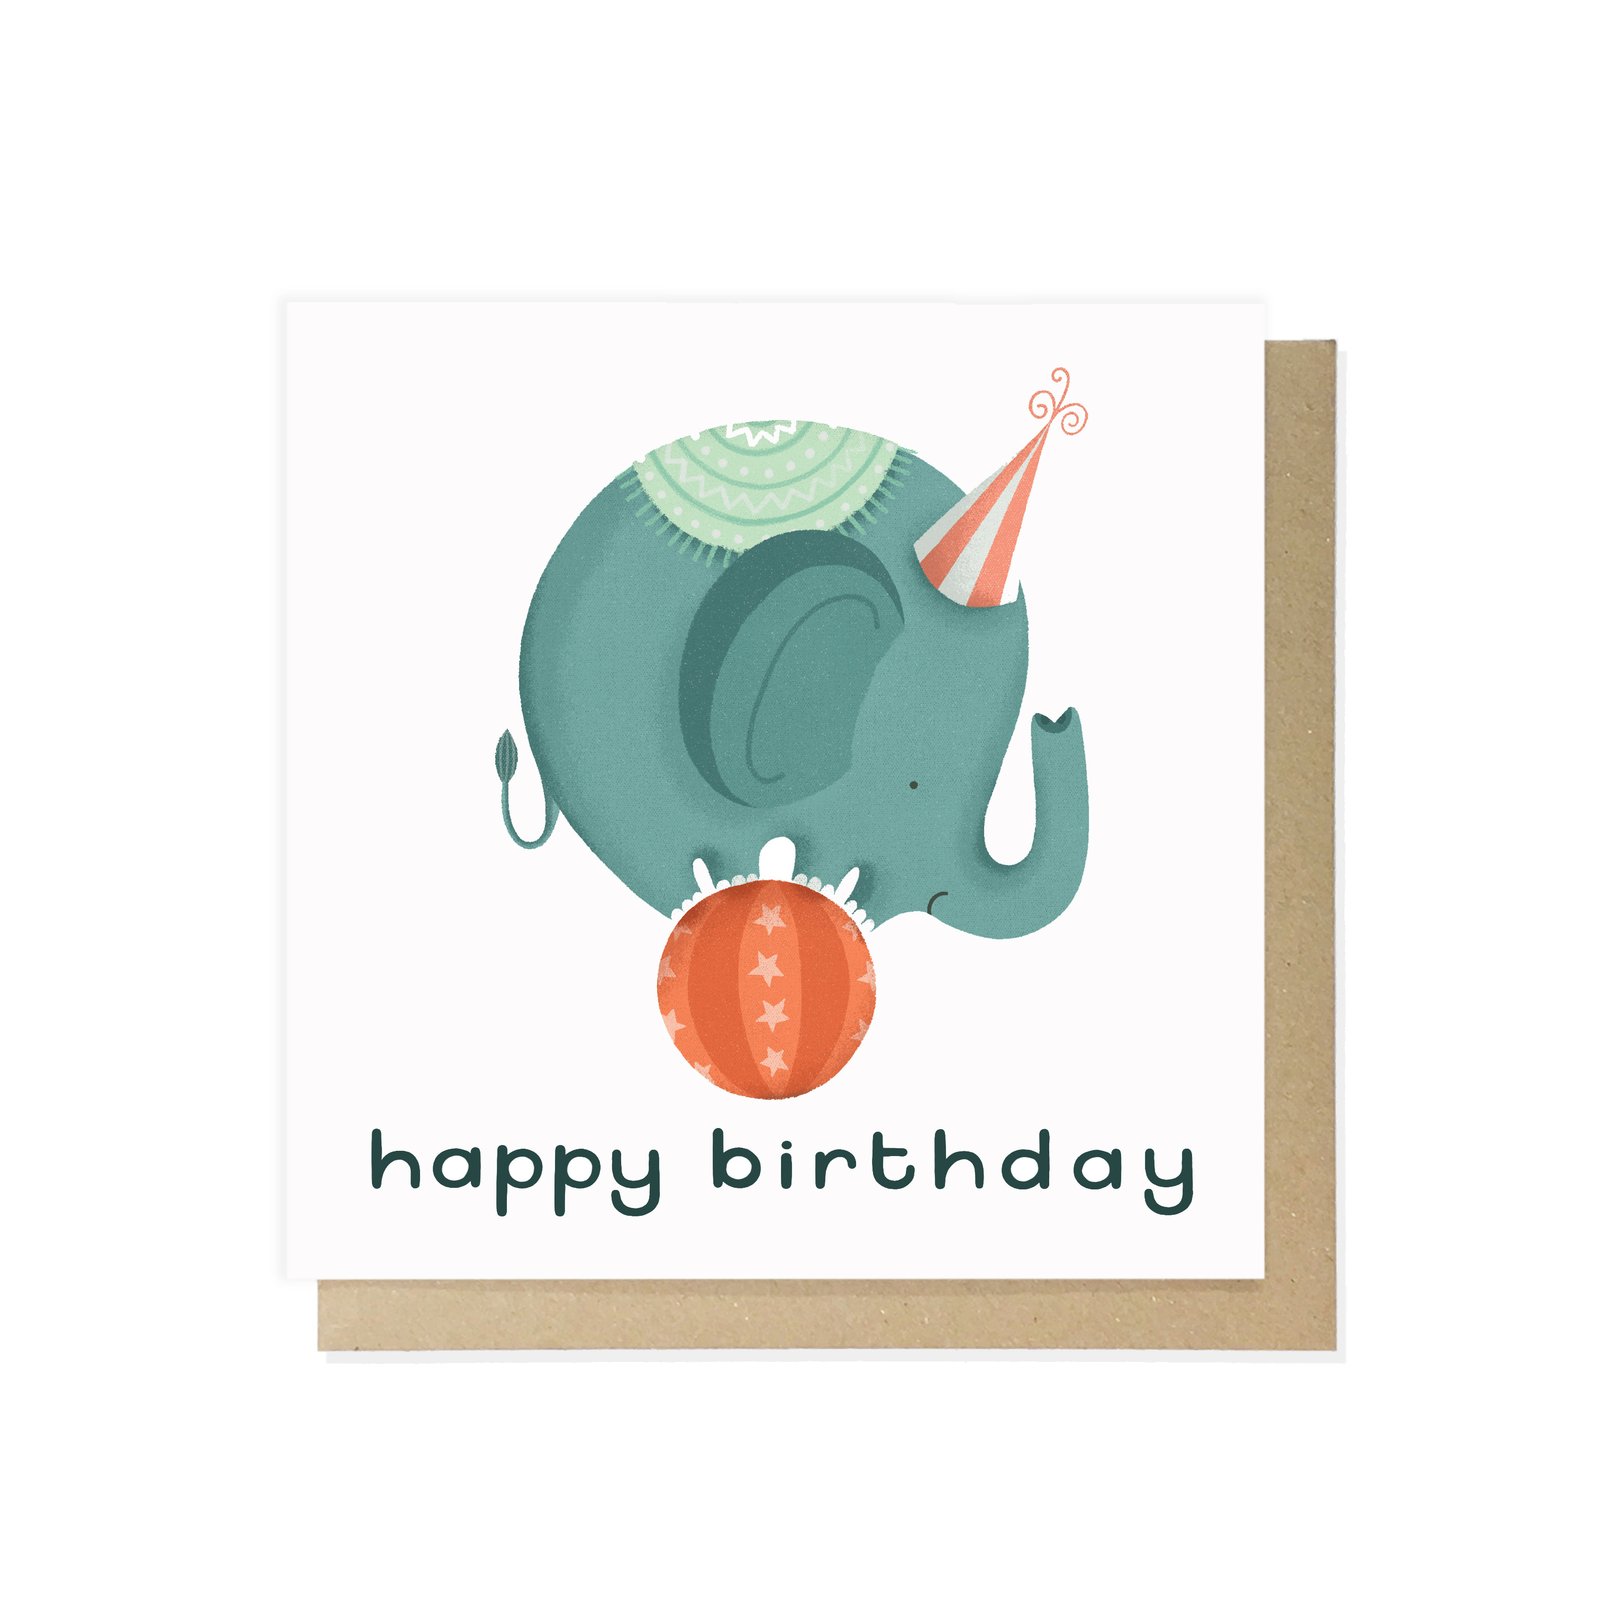 Happy birthday elephant – lauren radley